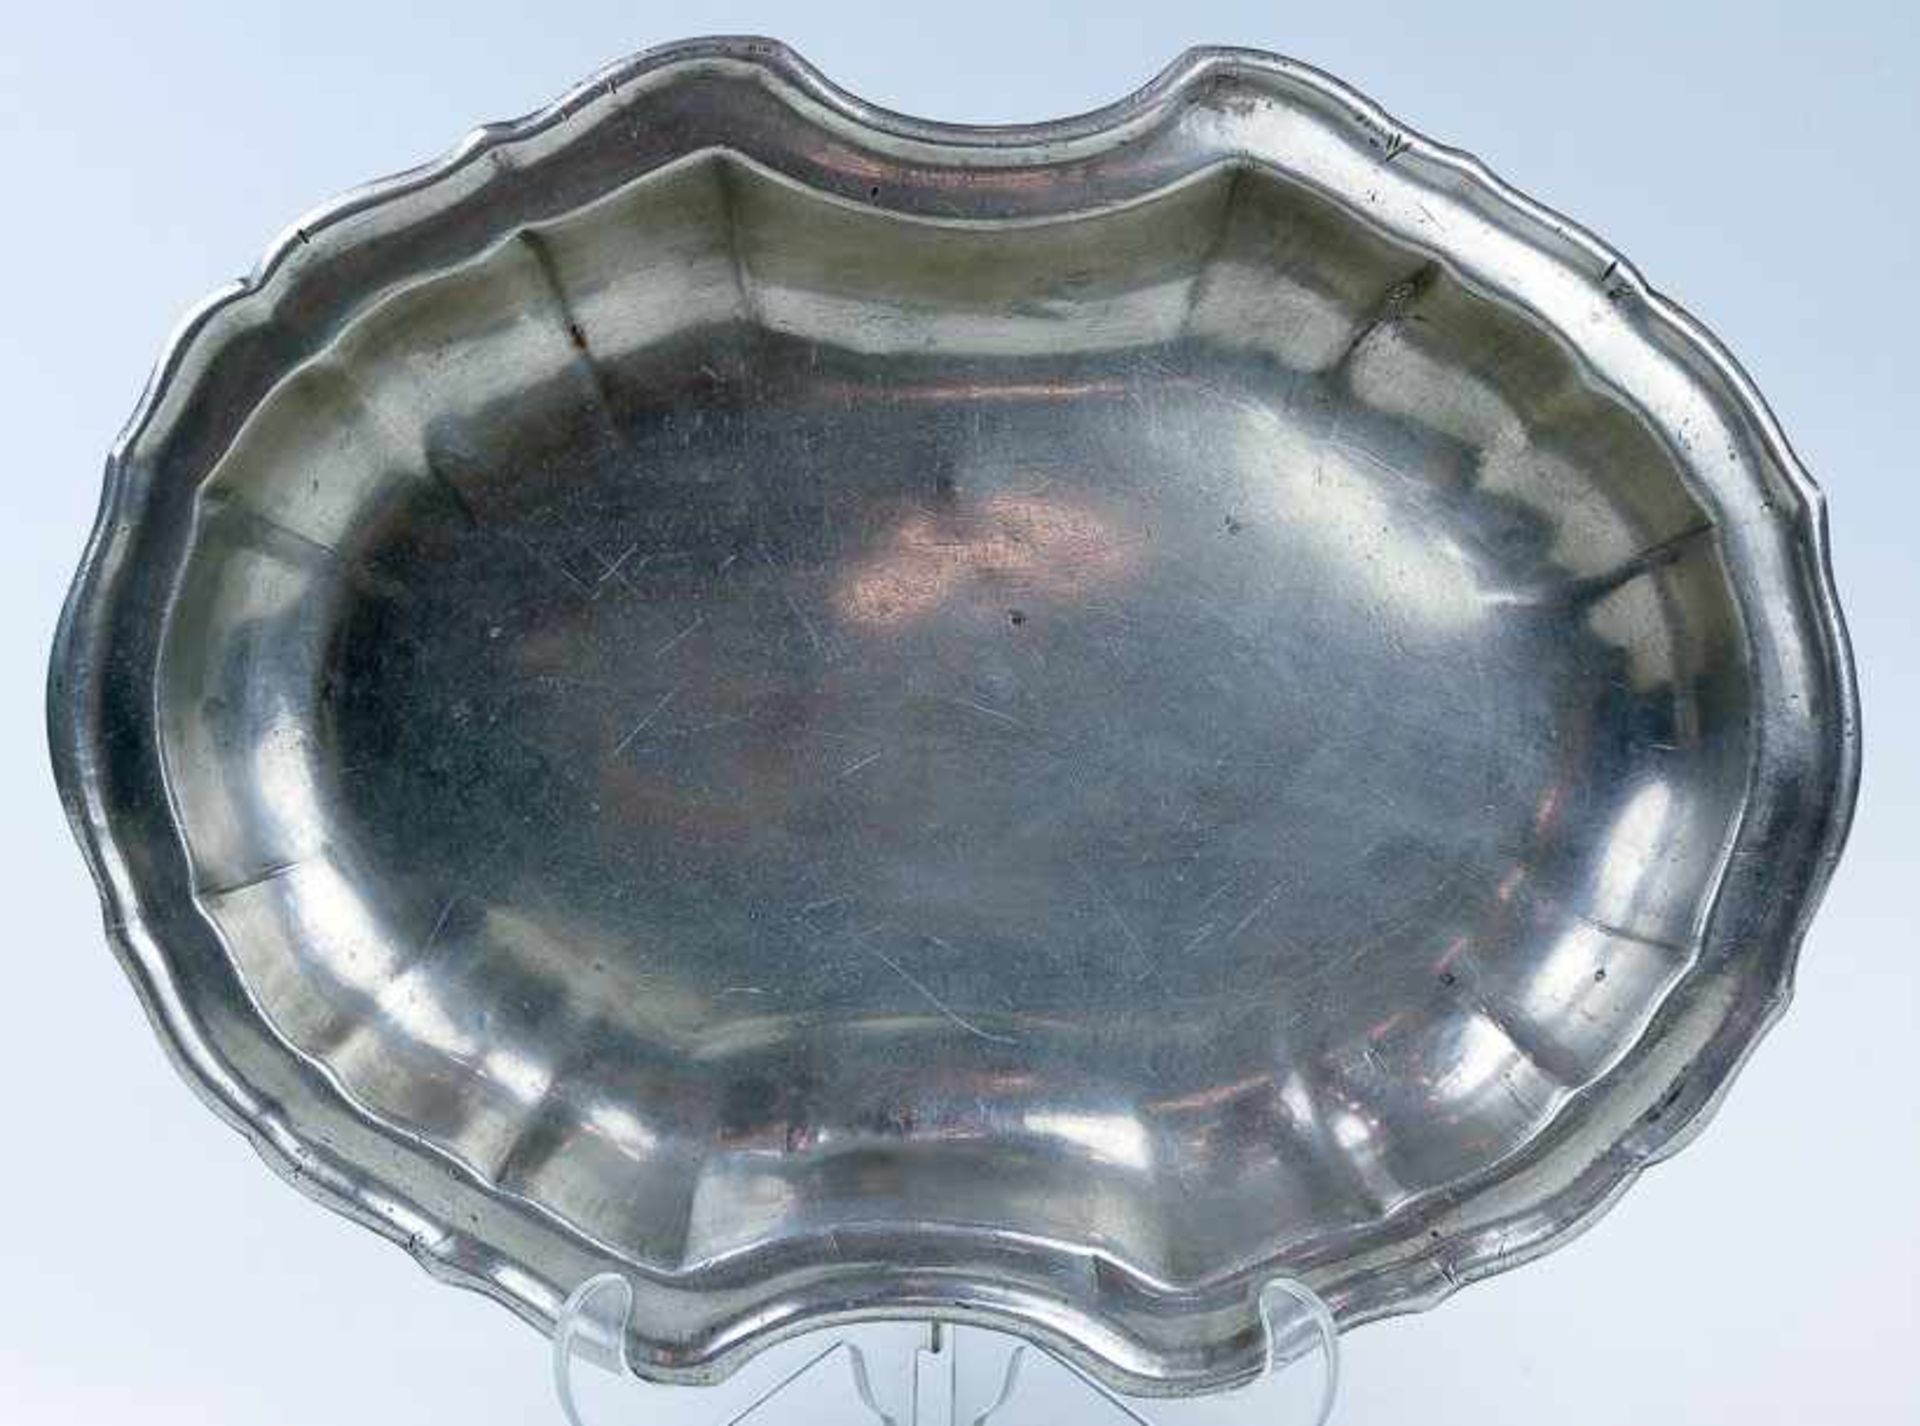 Ovale Schale im BarockstilZinn. Gerade Längsfalten u. eingezogener Rand. D. 26×36 cm. Eingravierte